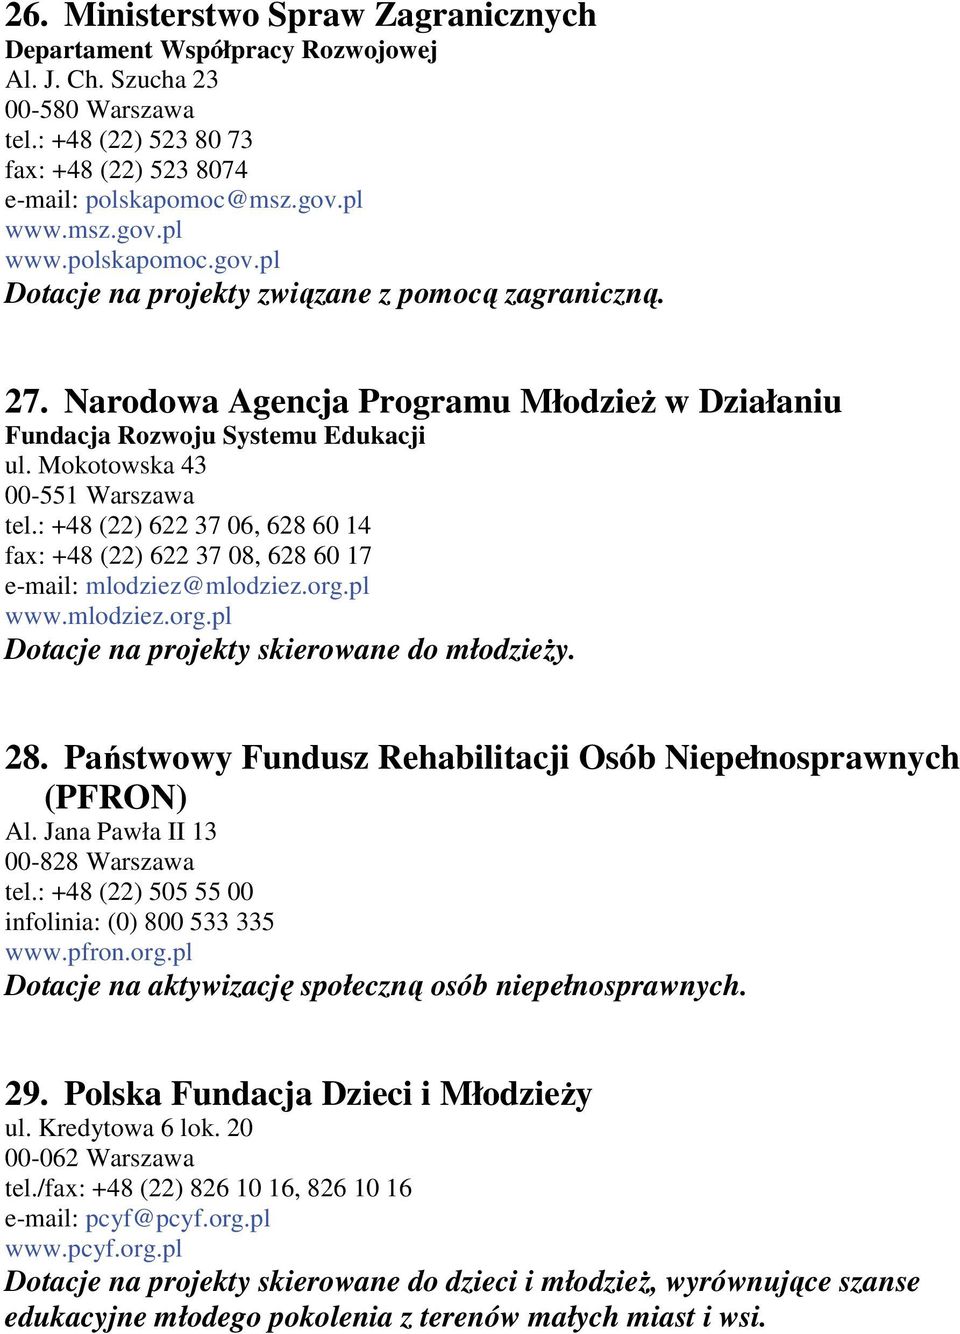 Mokotowska 43 00-551 Warszawa tel.: +48 (22) 622 37 06, 628 60 14 fax: +48 (22) 622 37 08, 628 60 17 e-mail: mlodziez@mlodziez.org.pl www.mlodziez.org.pl Dotacje na projekty skierowane do młodzieŝy.